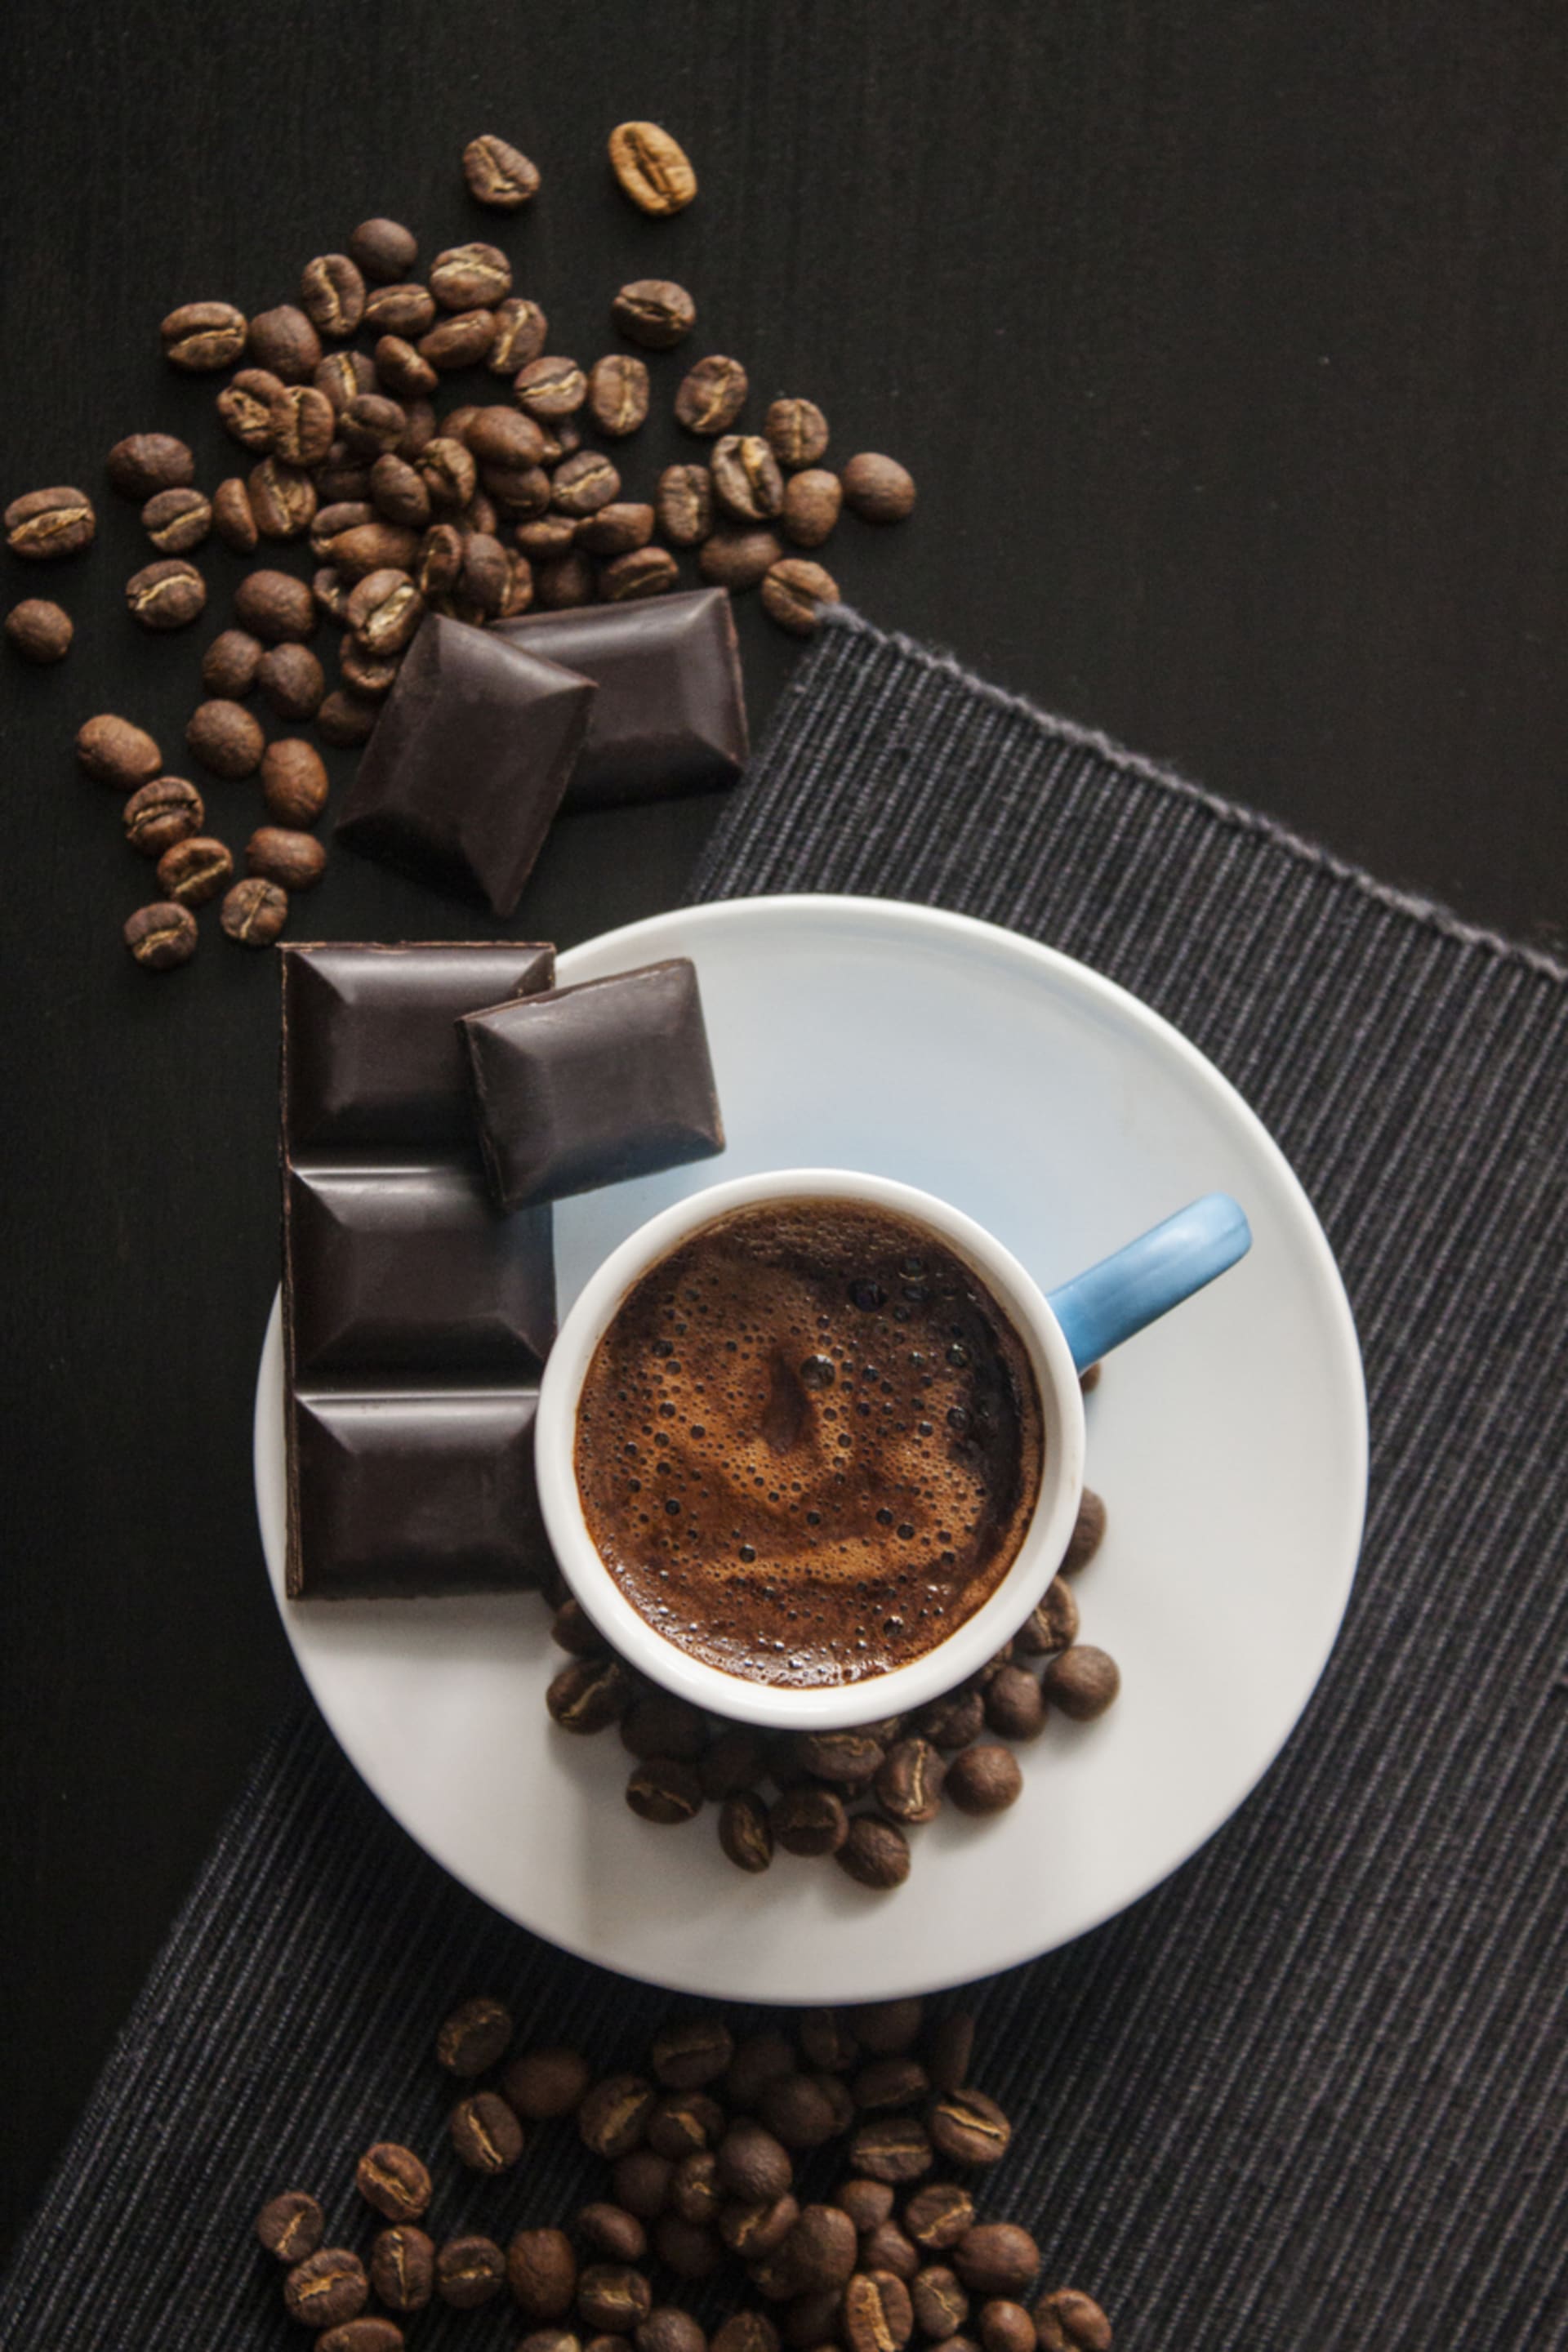 Co o vás prozradí oblíbená čokoláda? káva